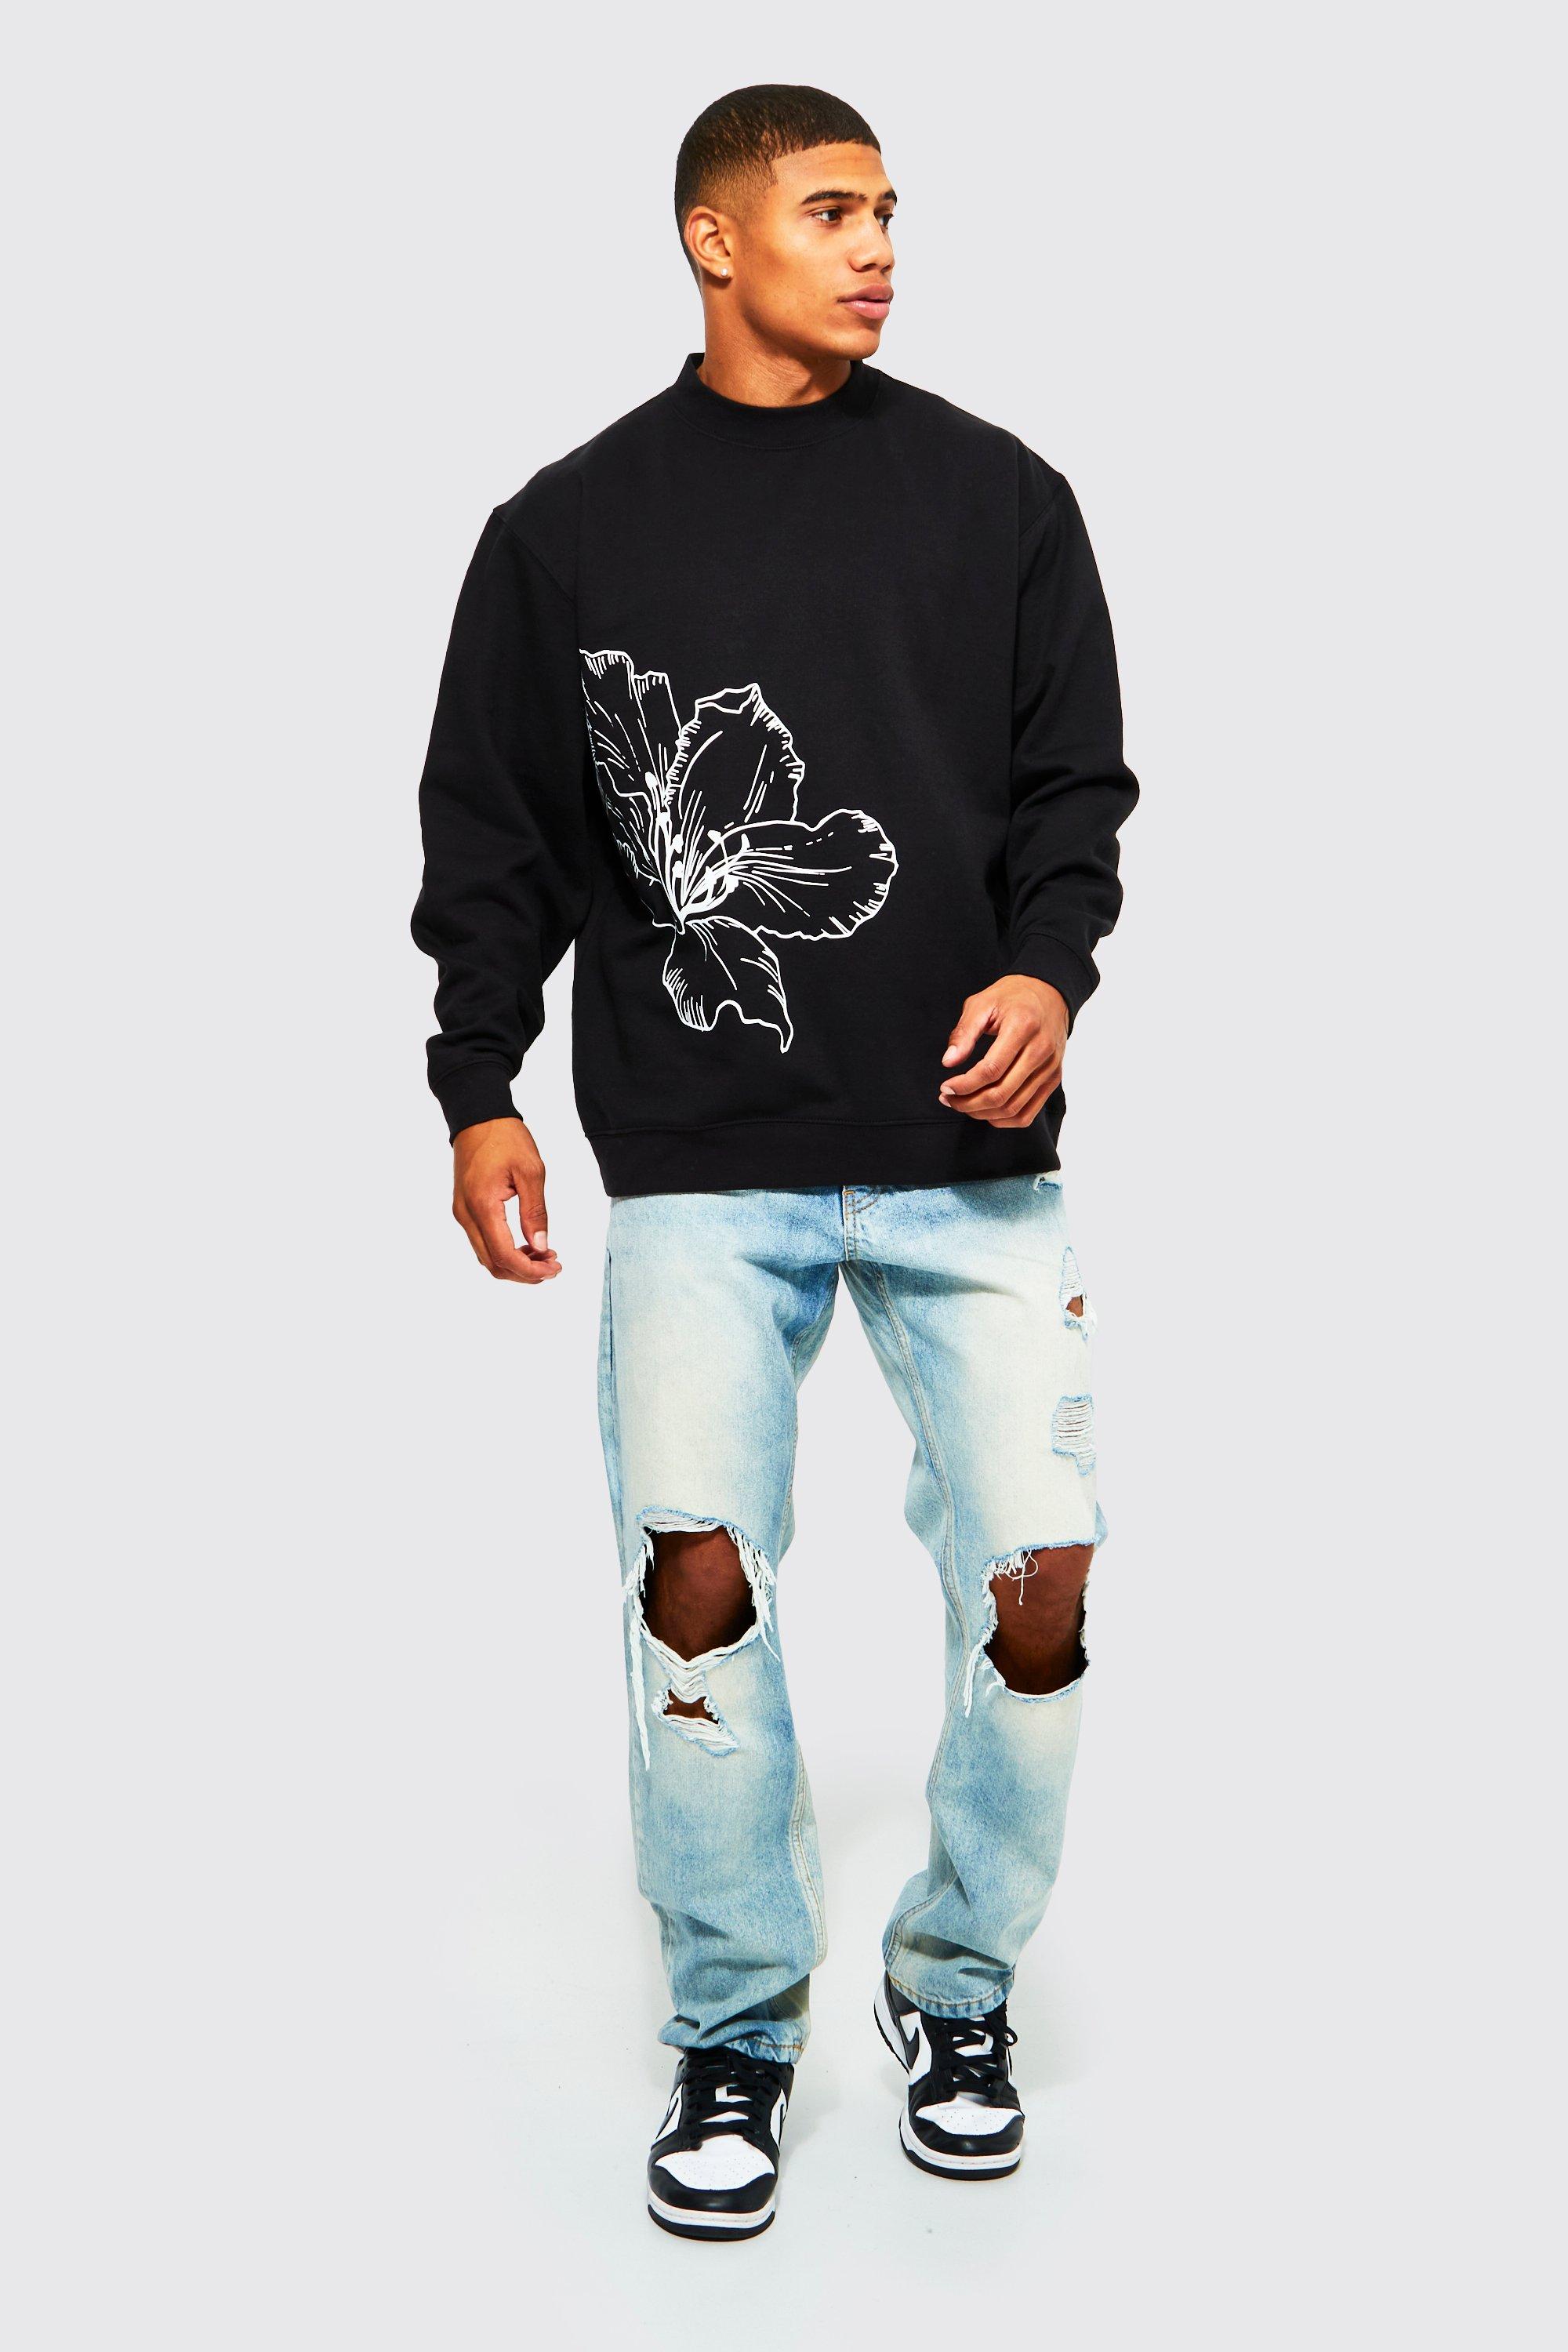 Hoodie Floral pattern hoodie - Sweatshirts